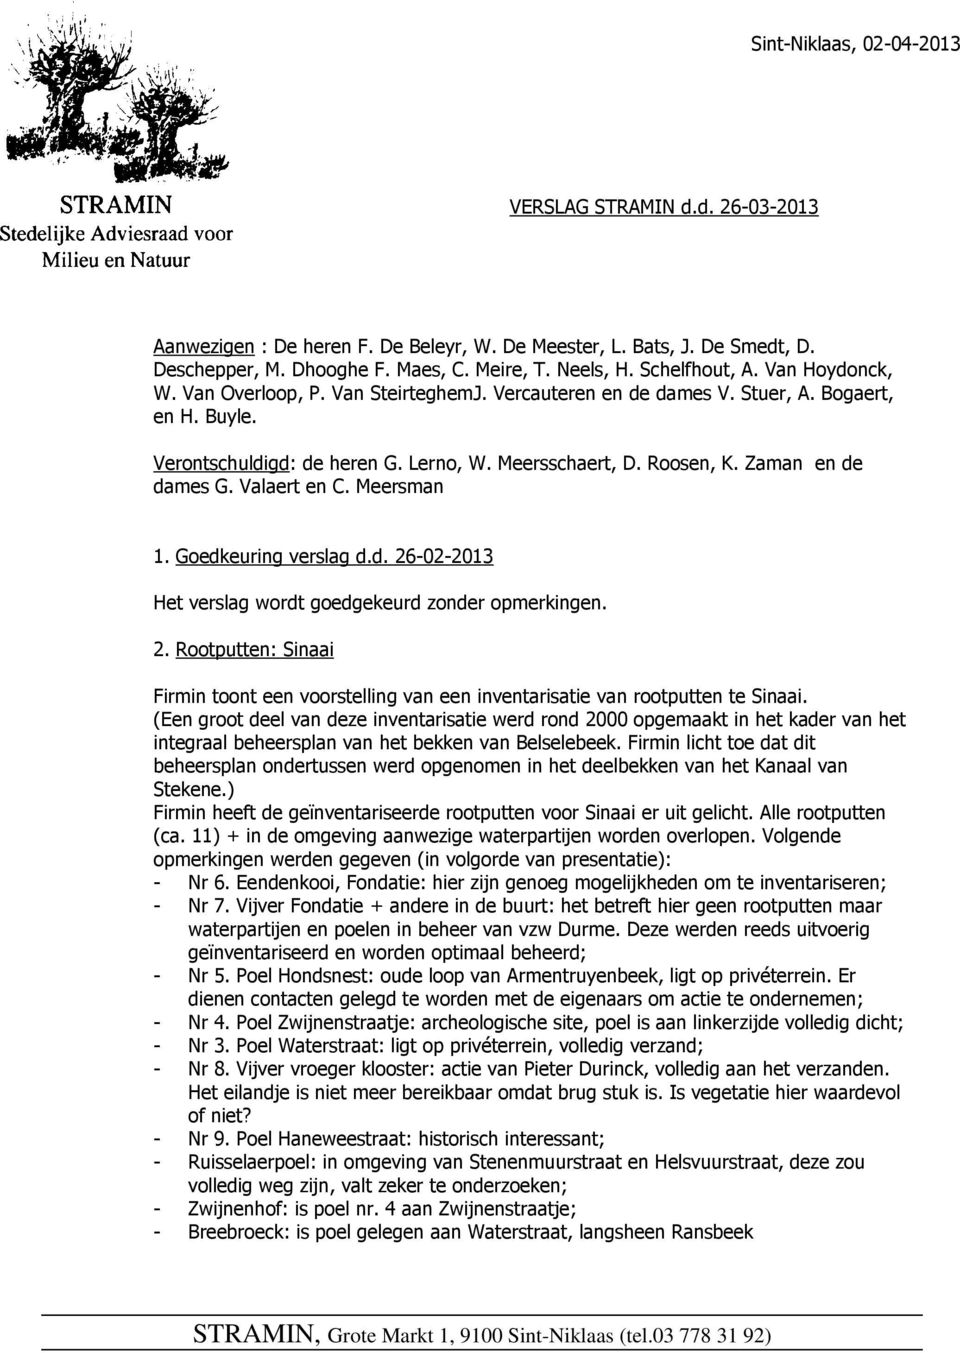 Zaman en de dames G. Valaert en C. Meersman 1. Goedkeuring verslag d.d. 26-02-2013 Het verslag wordt goedgekeurd zonder opmerkingen. 2. Rootputten: Sinaai Firmin toont een voorstelling van een inventarisatie van rootputten te Sinaai.